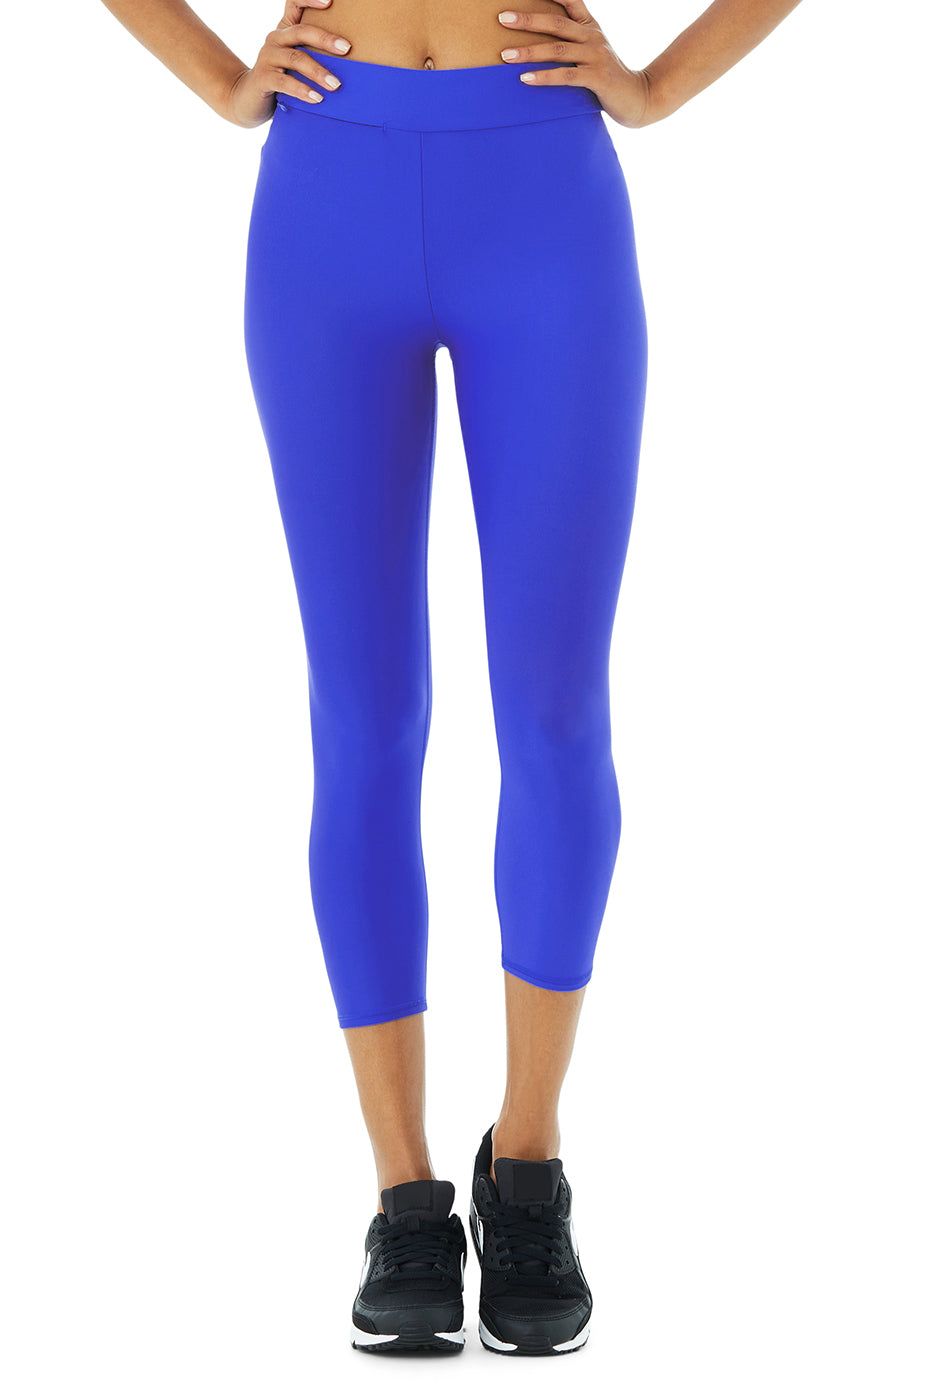 Iconic 90's Capri Alosoft® high-rise leggings in blue - Alo Yoga